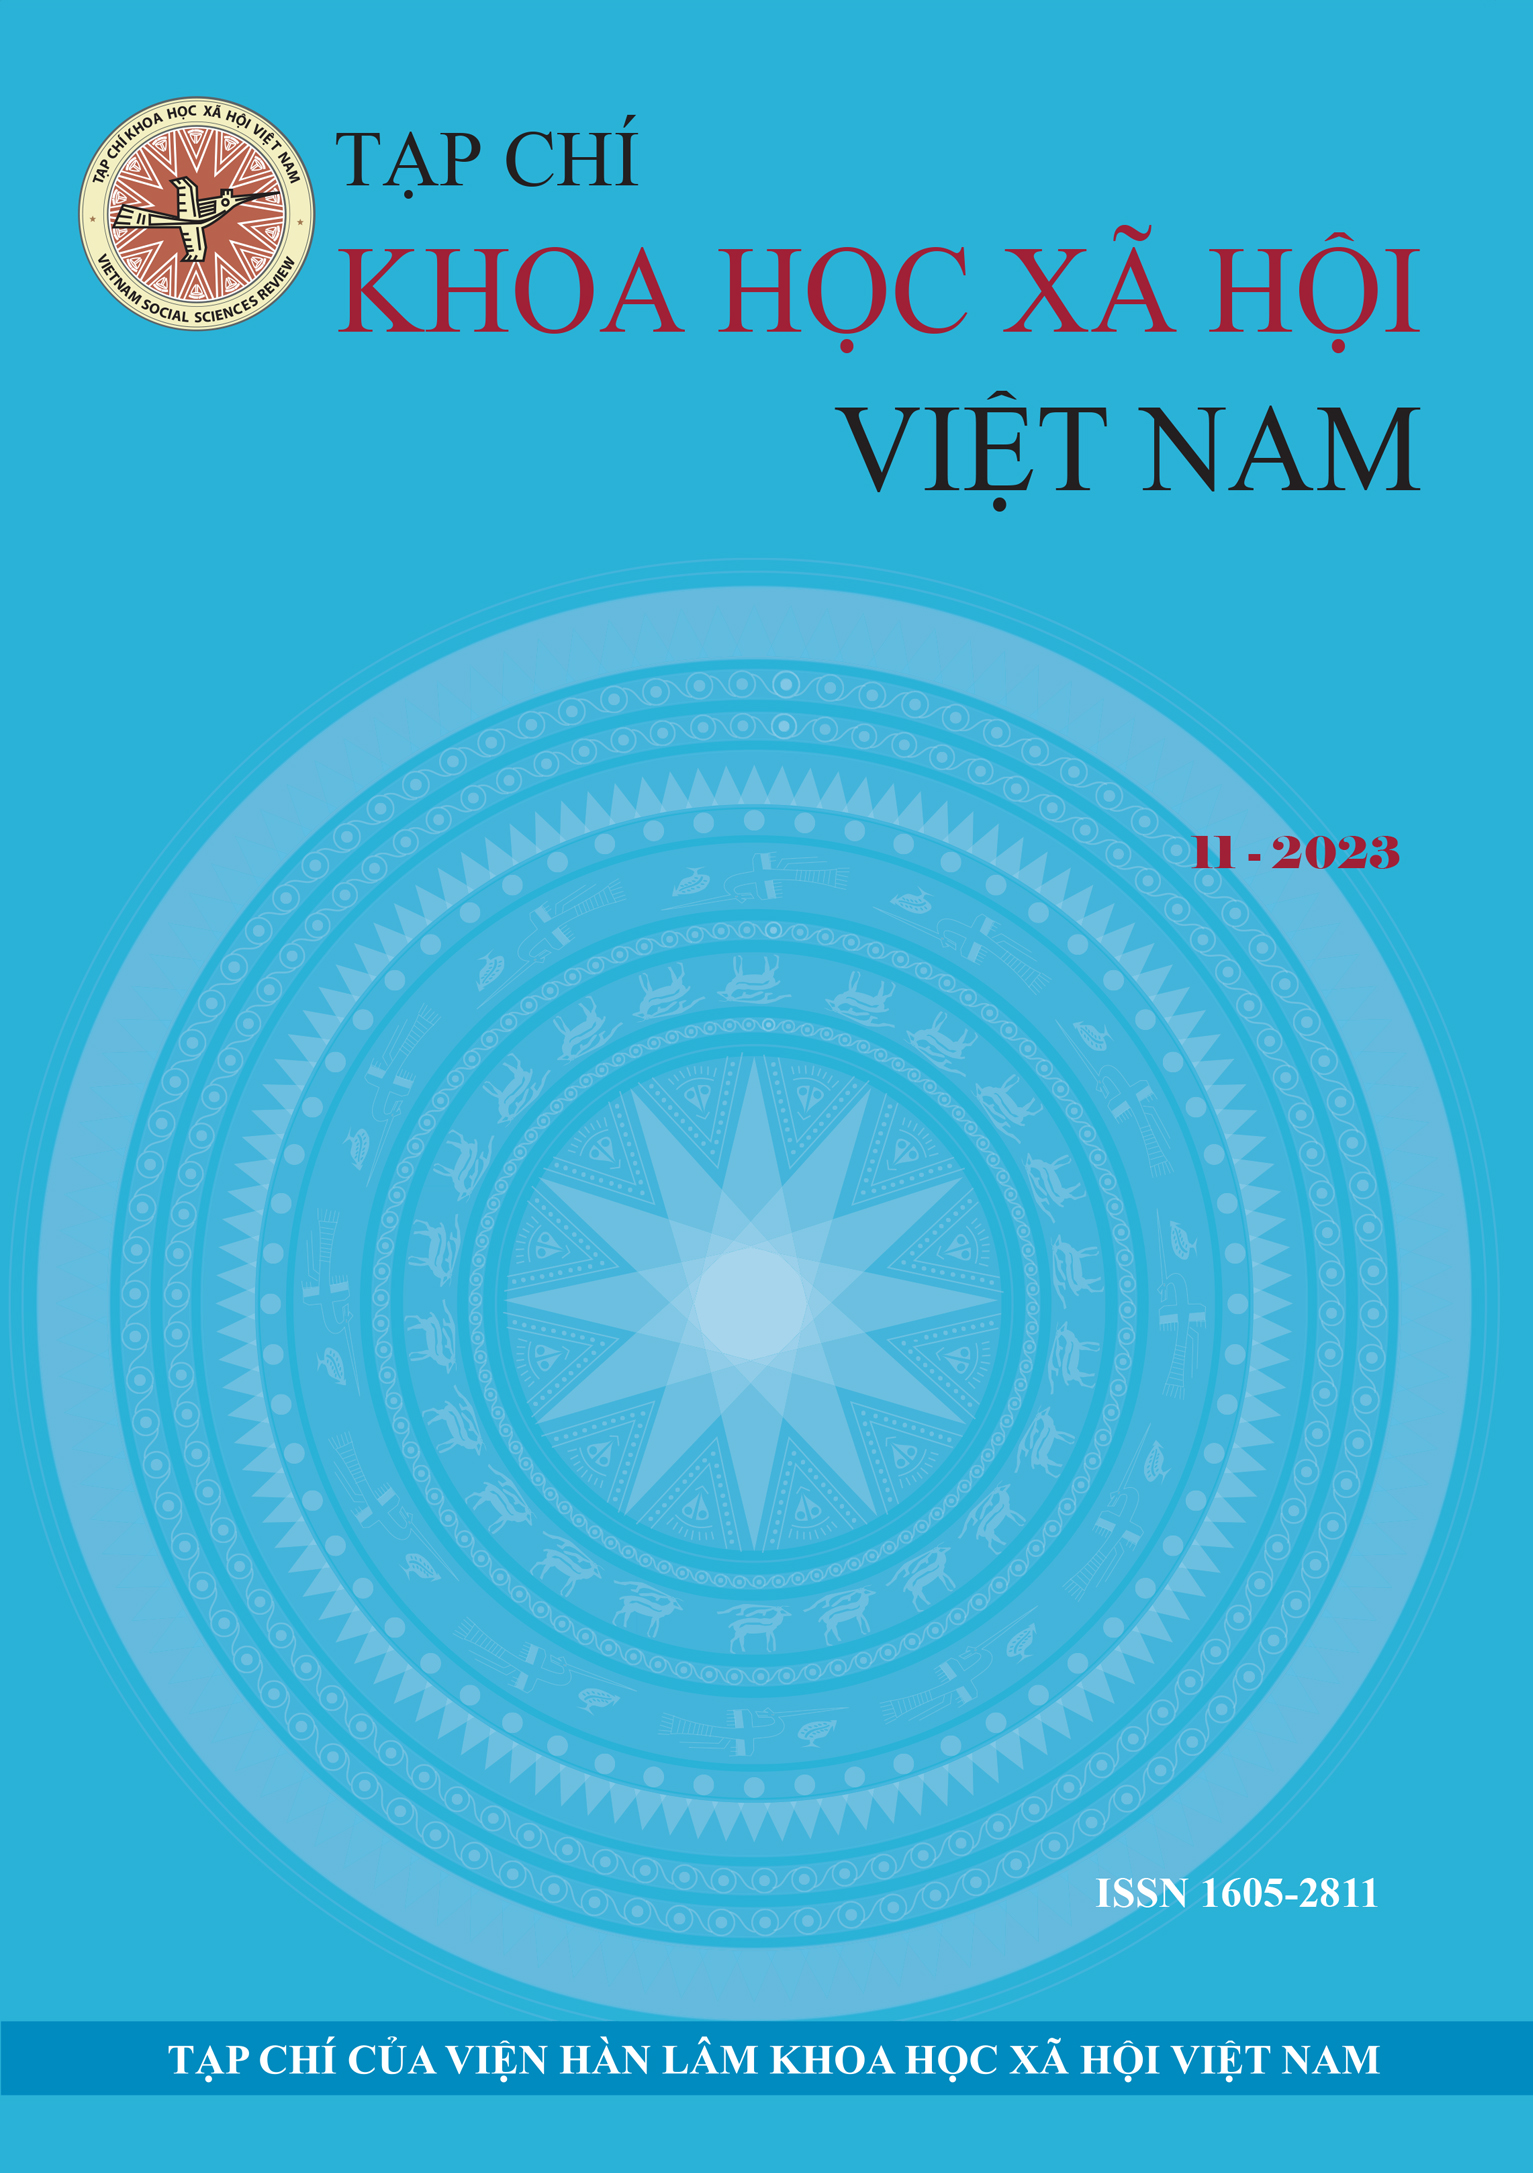 Tạp chí Khoa học xã hội Việt Nam. Số 11 - 2023 